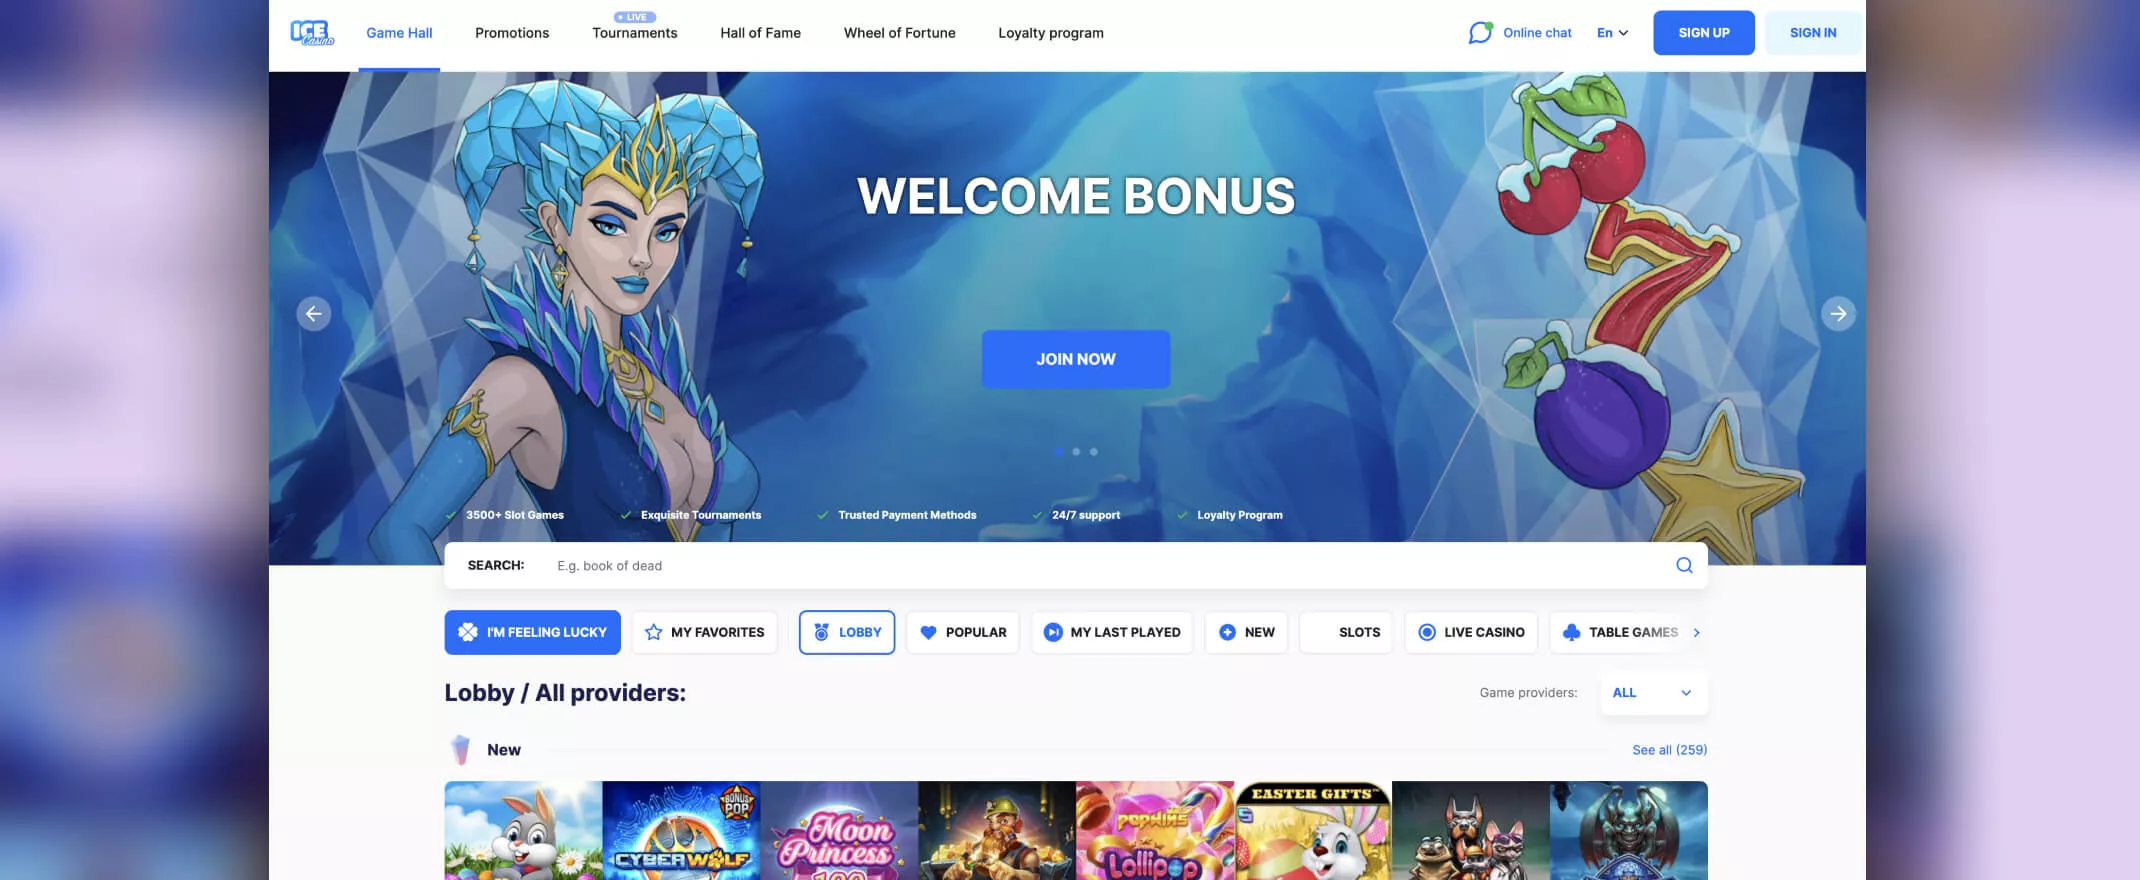 Ice casino homepage screenshot